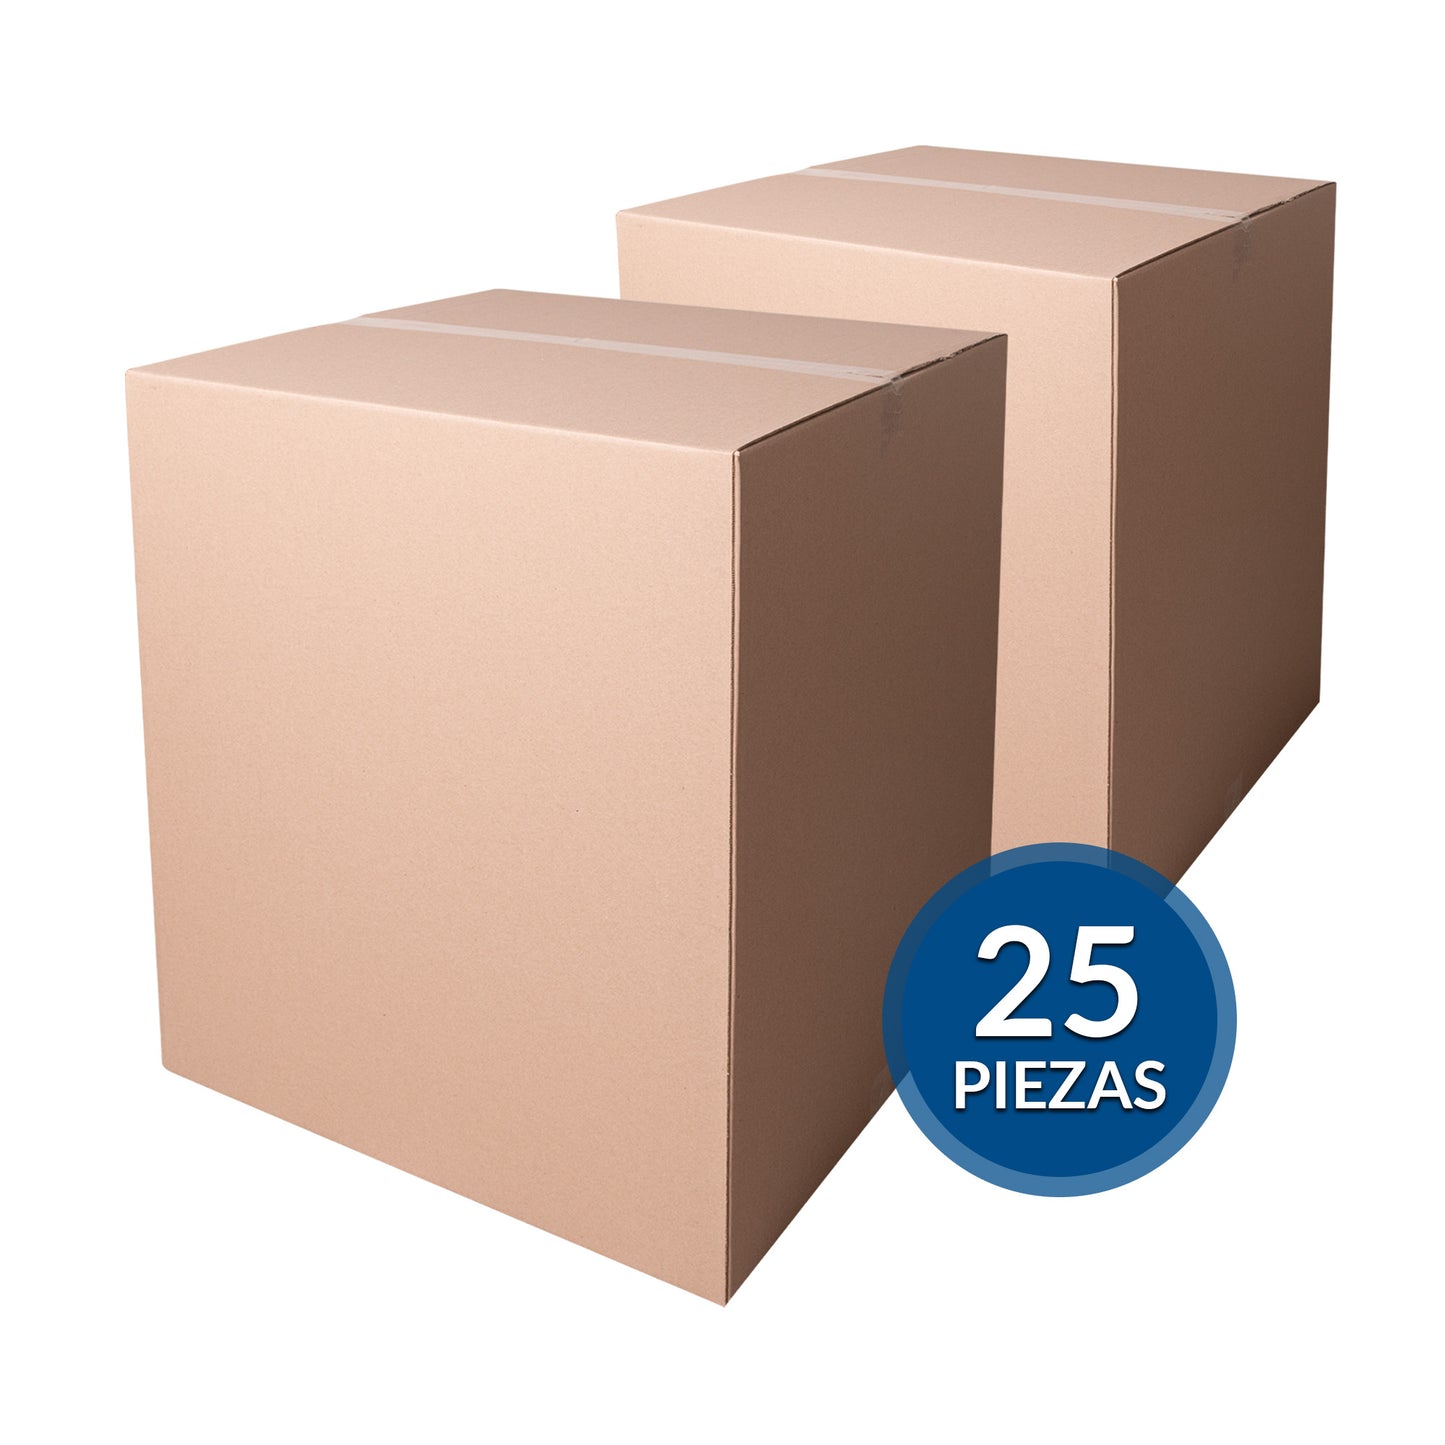 Cajas de cartón para envíos #23